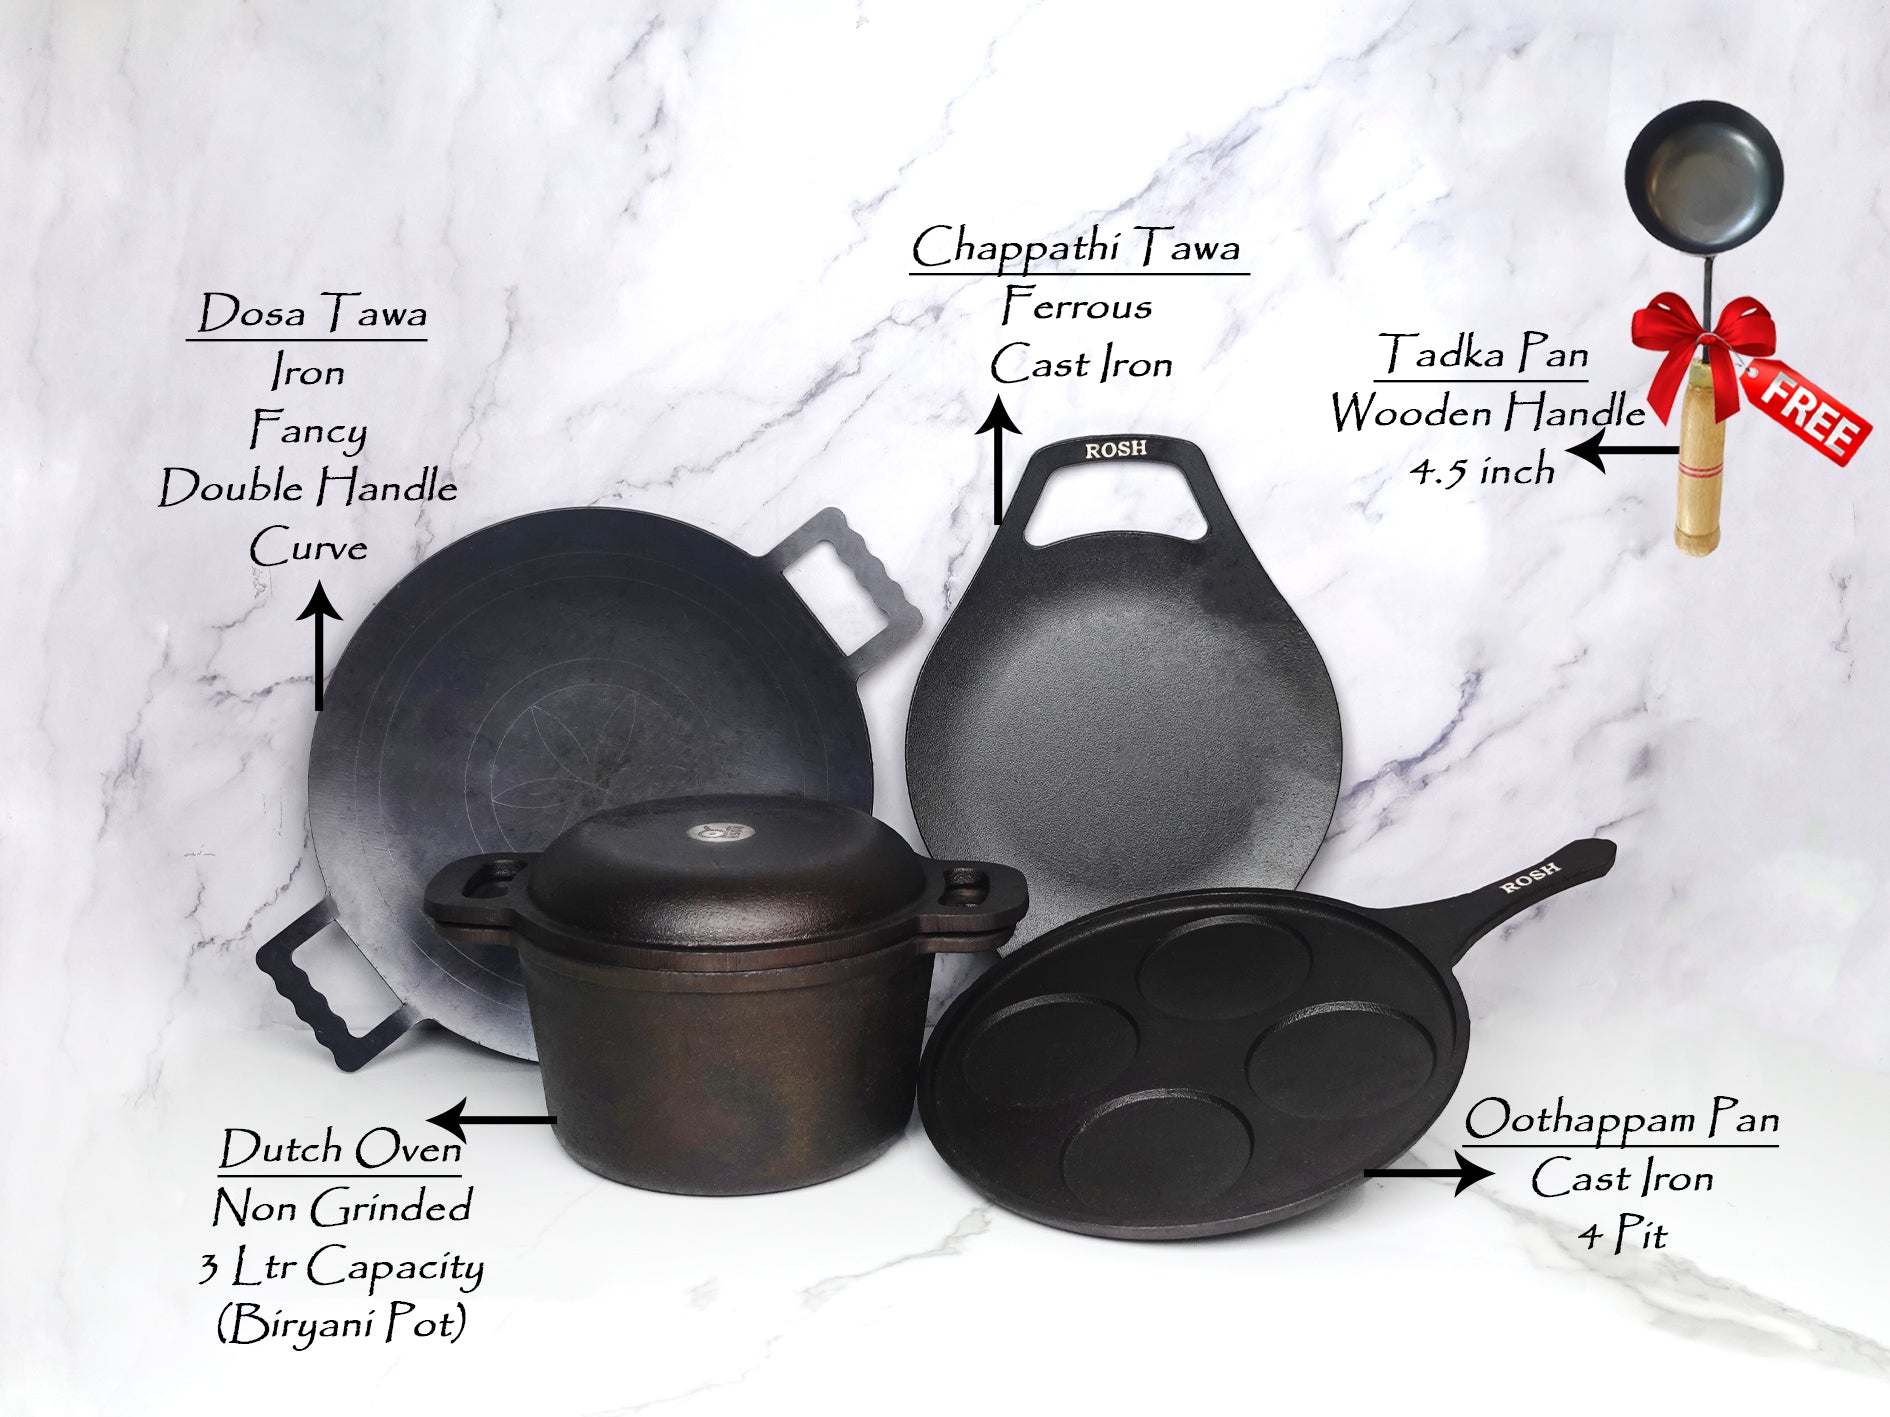 cast iron offer, cast iron cookwares, cookware offer, iron kadai, dosa  pan